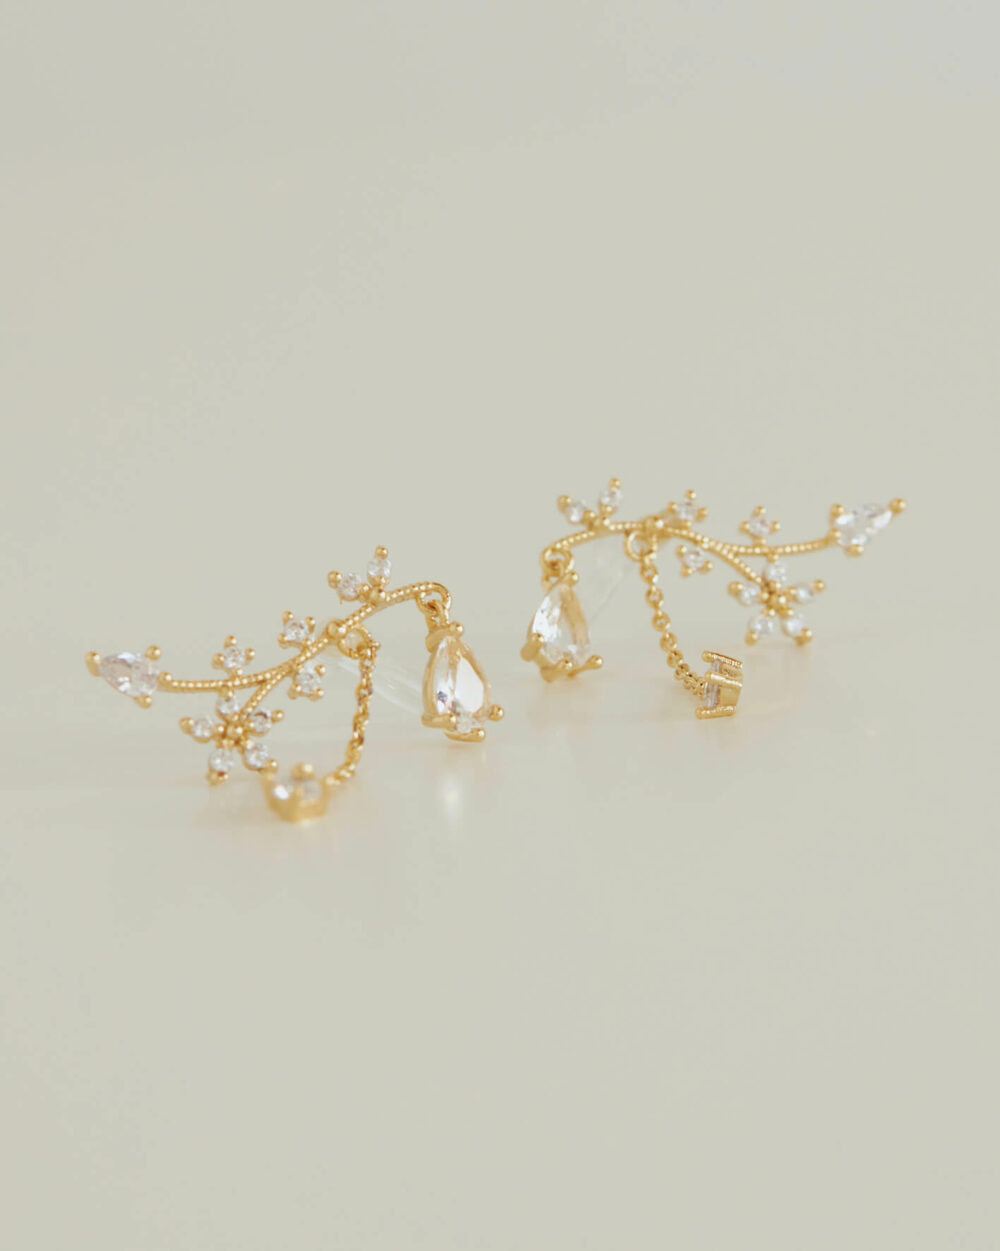 Eco安珂,韓國飾品,韓國耳環,純銀耳針耳環,矽膠夾耳環,透明耳夾耳環,垂墜透明耳夾